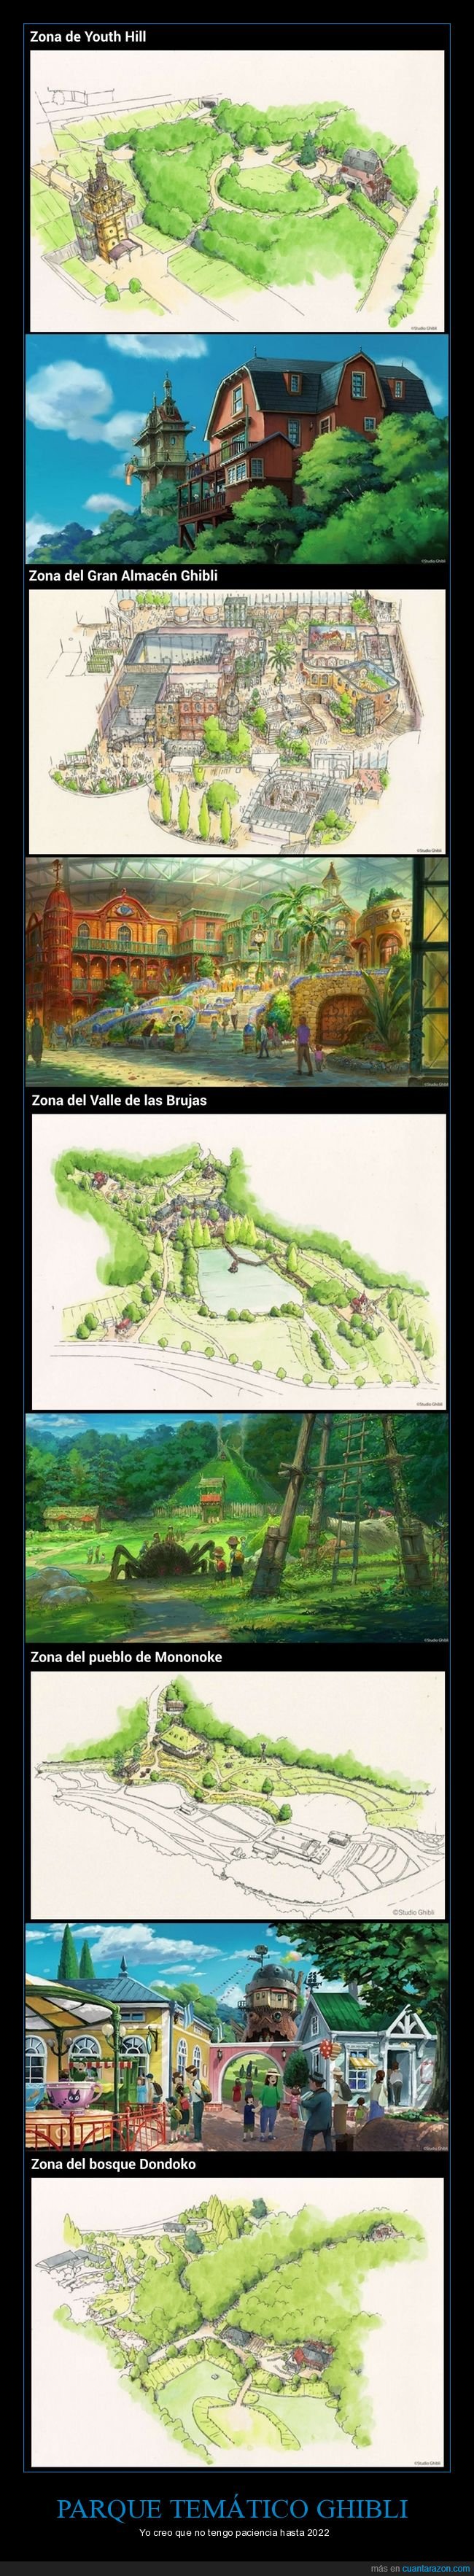 Estudio Ghibli,parque temático